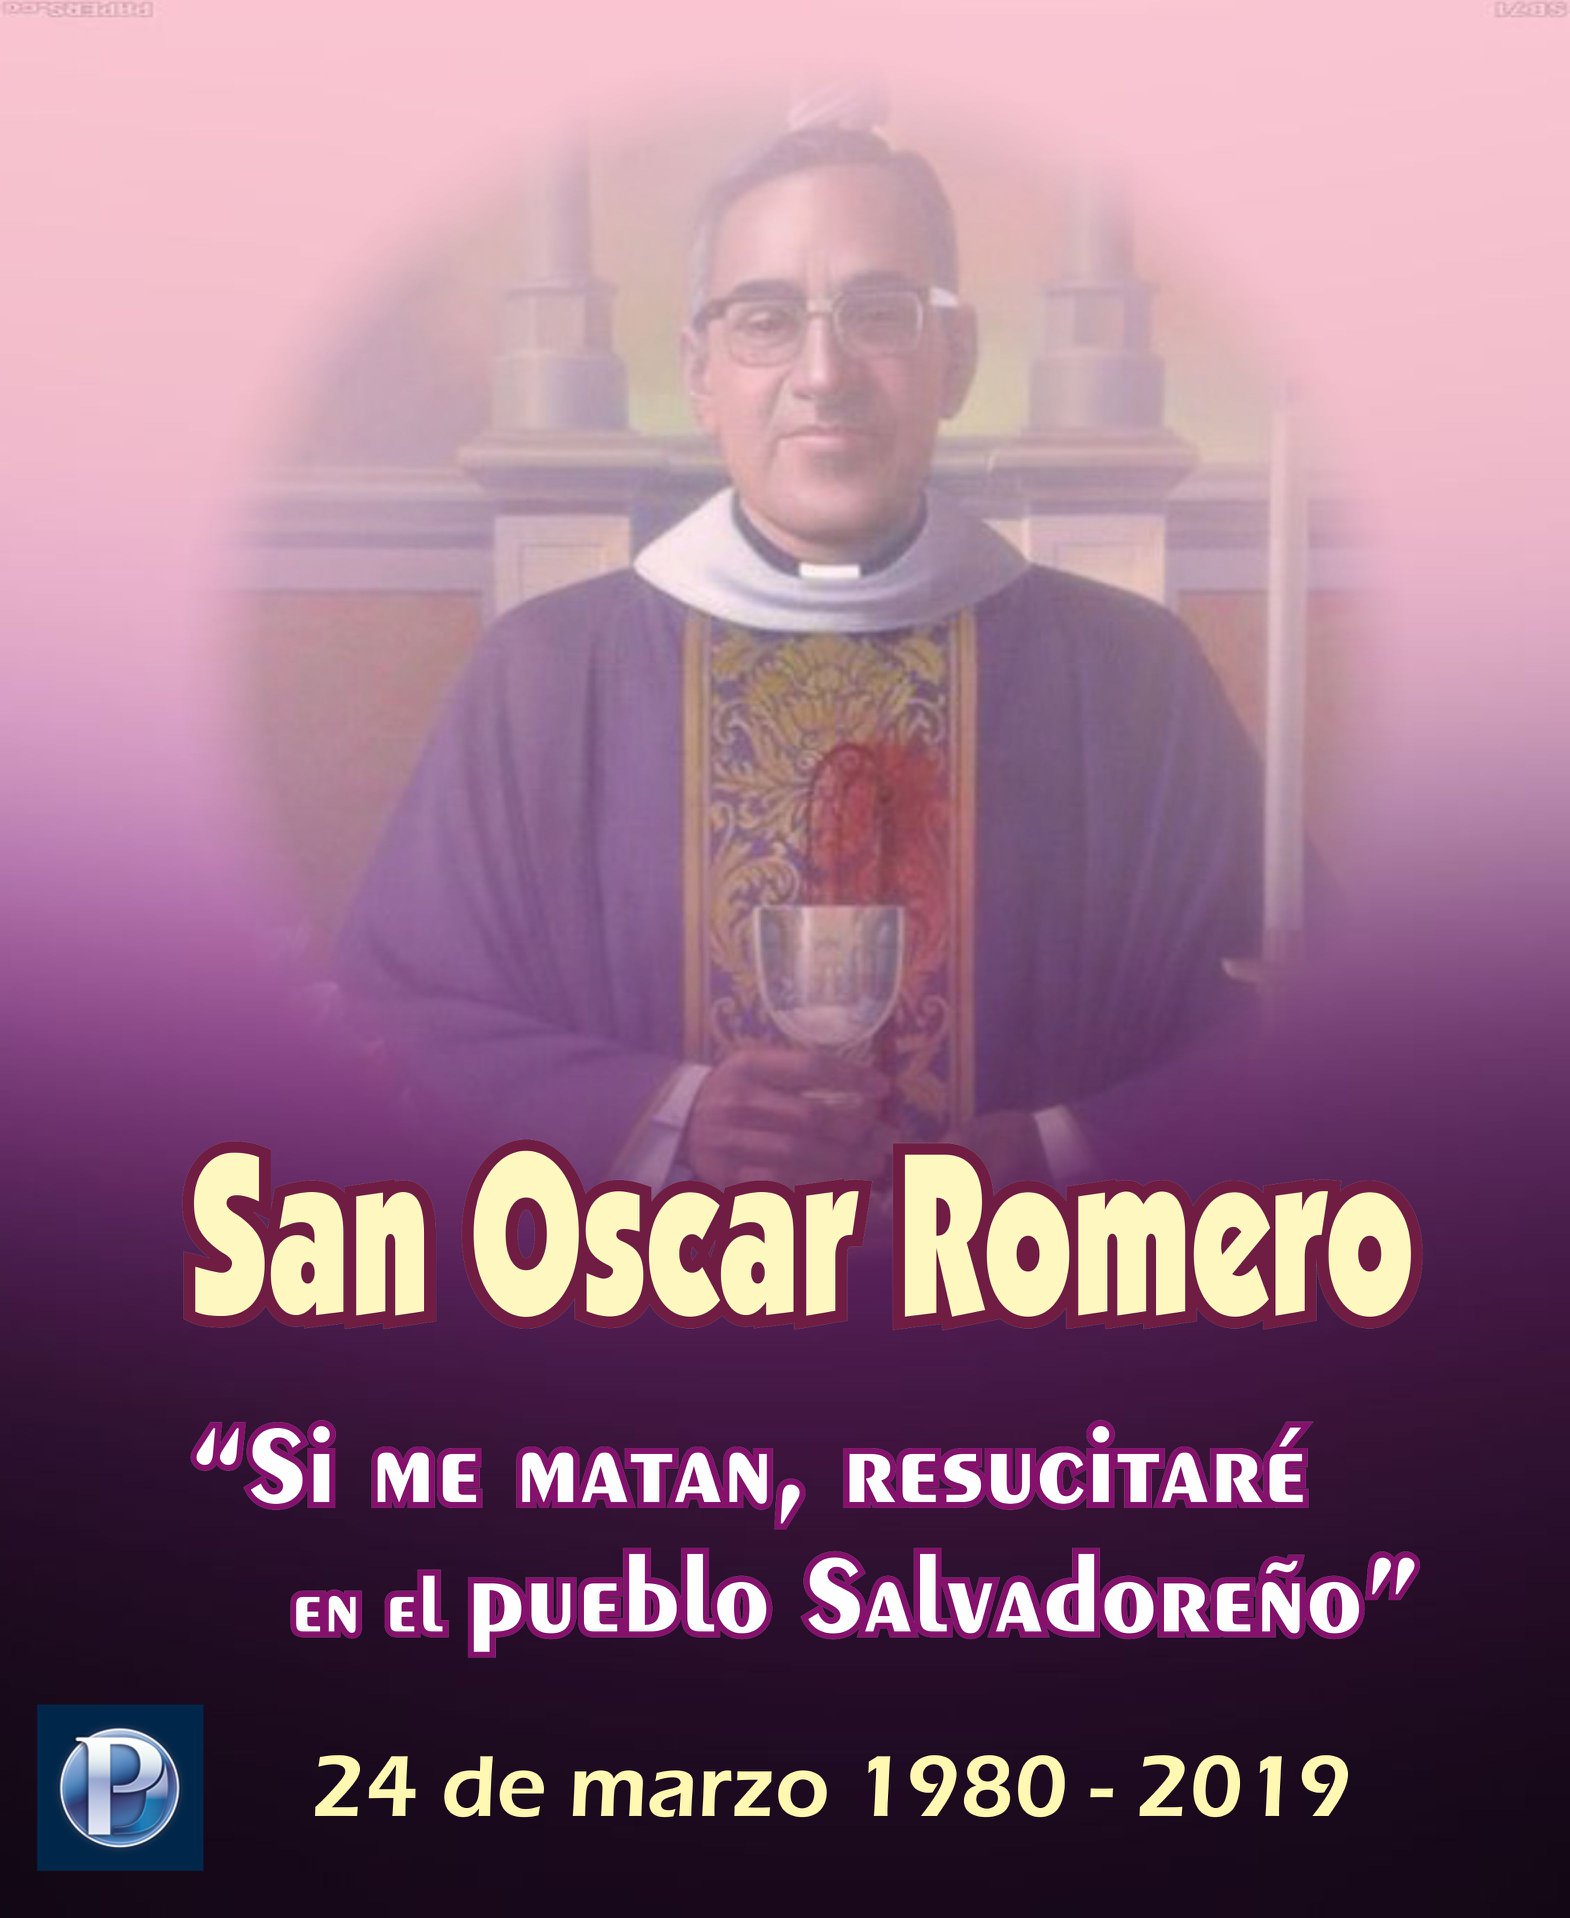 ¿Qué estaba predicando San Oscar Romero el día de su muerte?